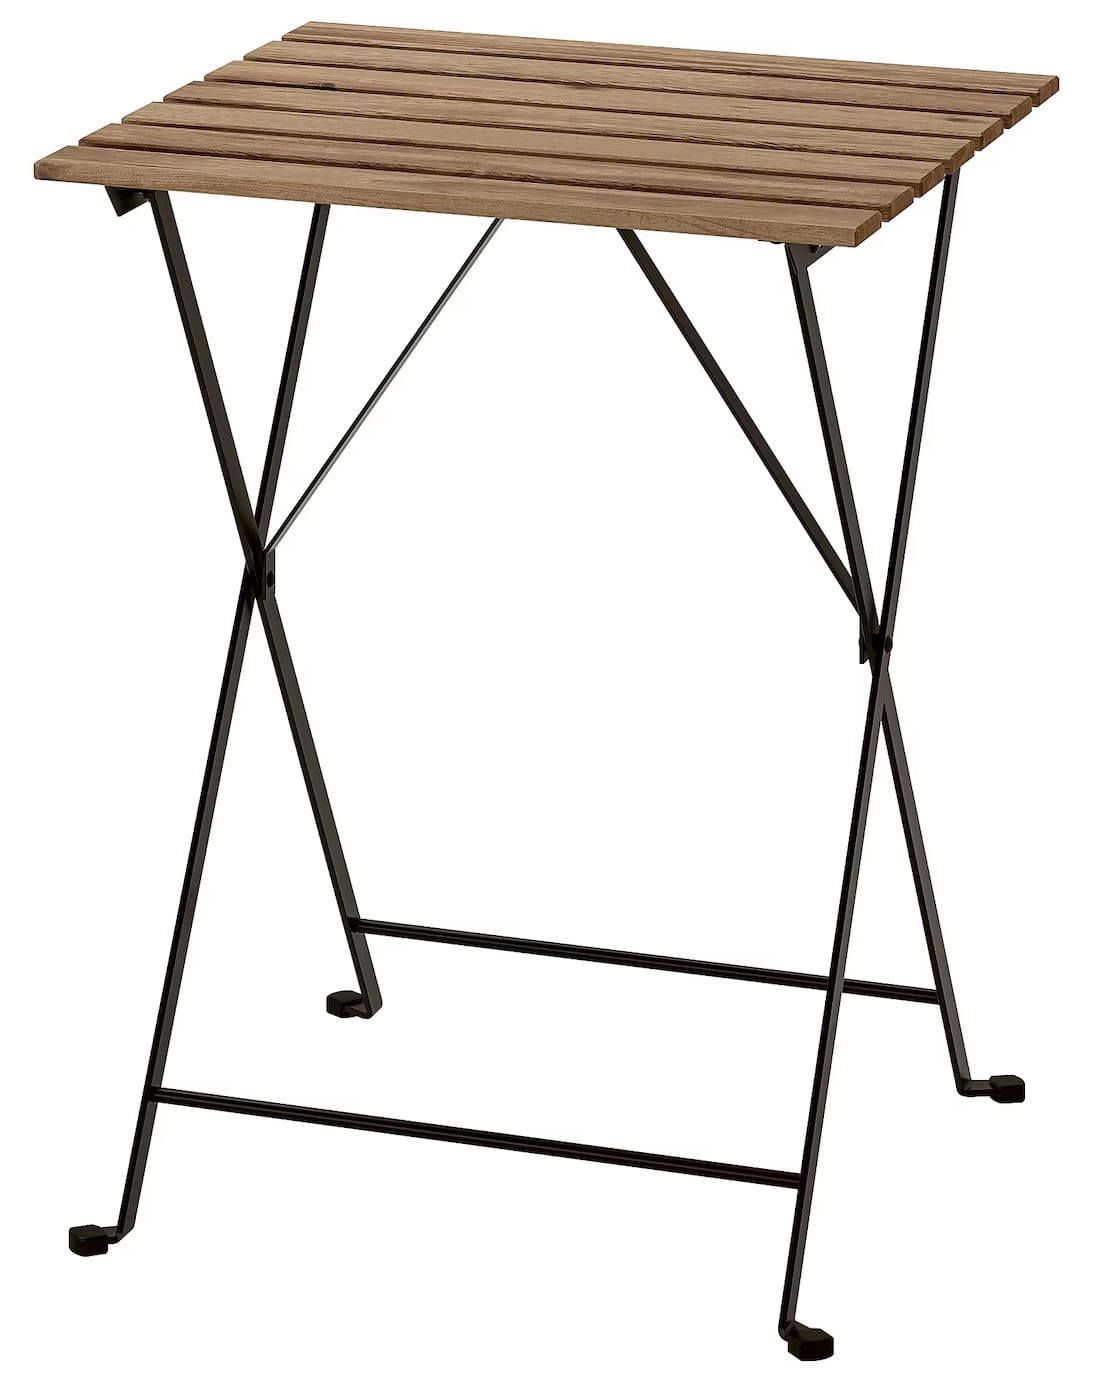 Il tavolo da giardino TÄRNÖ in legno di acacia di Ikea